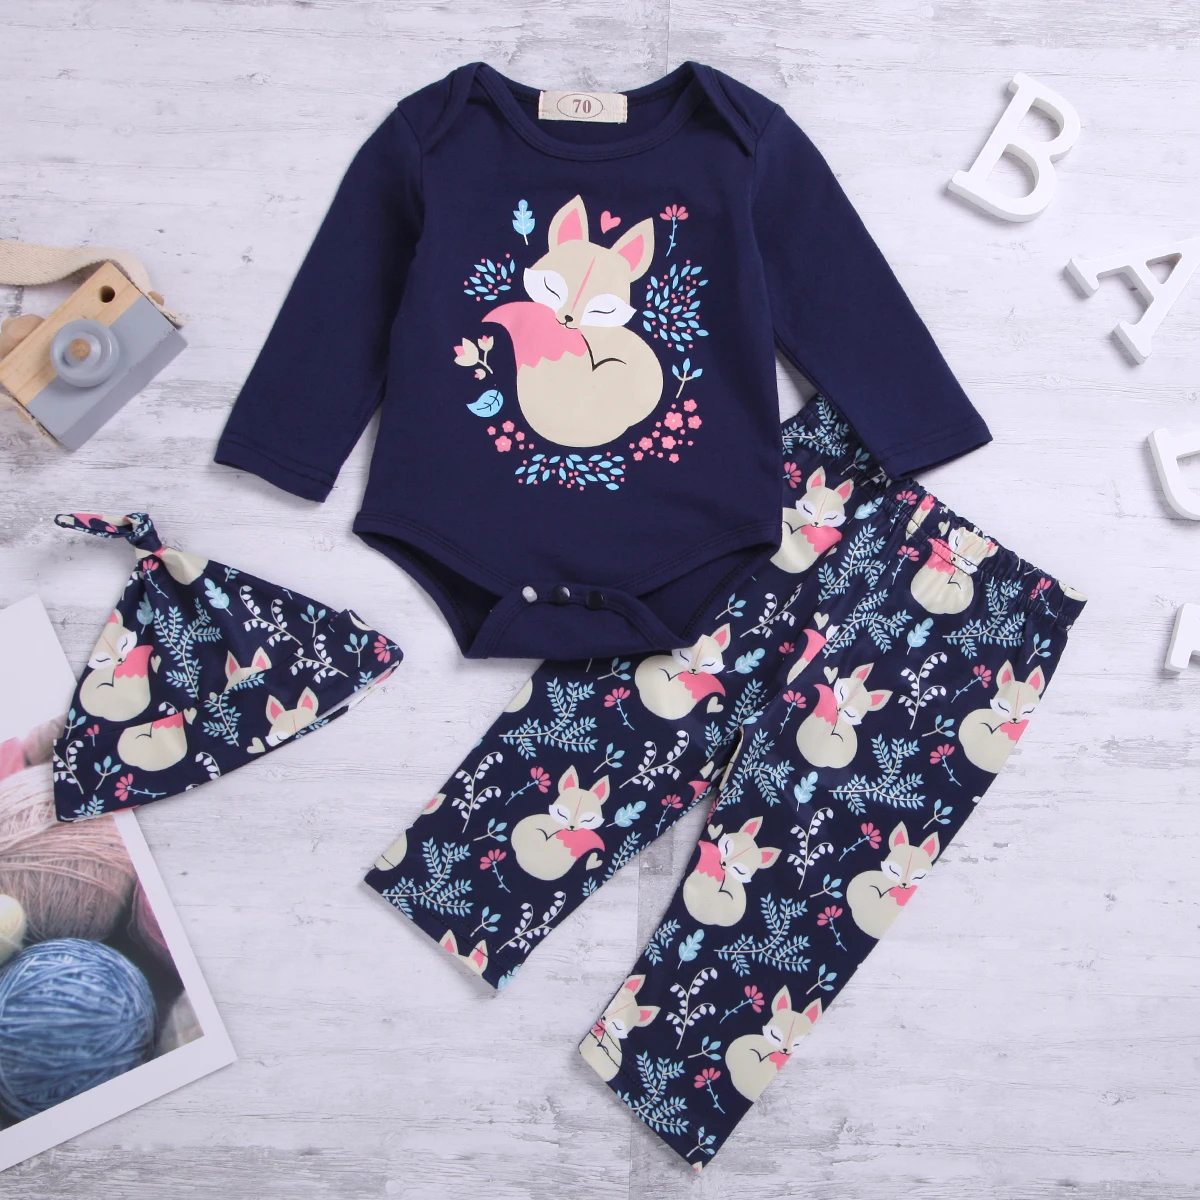 Хлопковый комбинезон с длинными рукавами для новорожденных девочек, штаны, шапка, комплект из 3 предметов, одежда для маленьких детей с милым принтом лисы